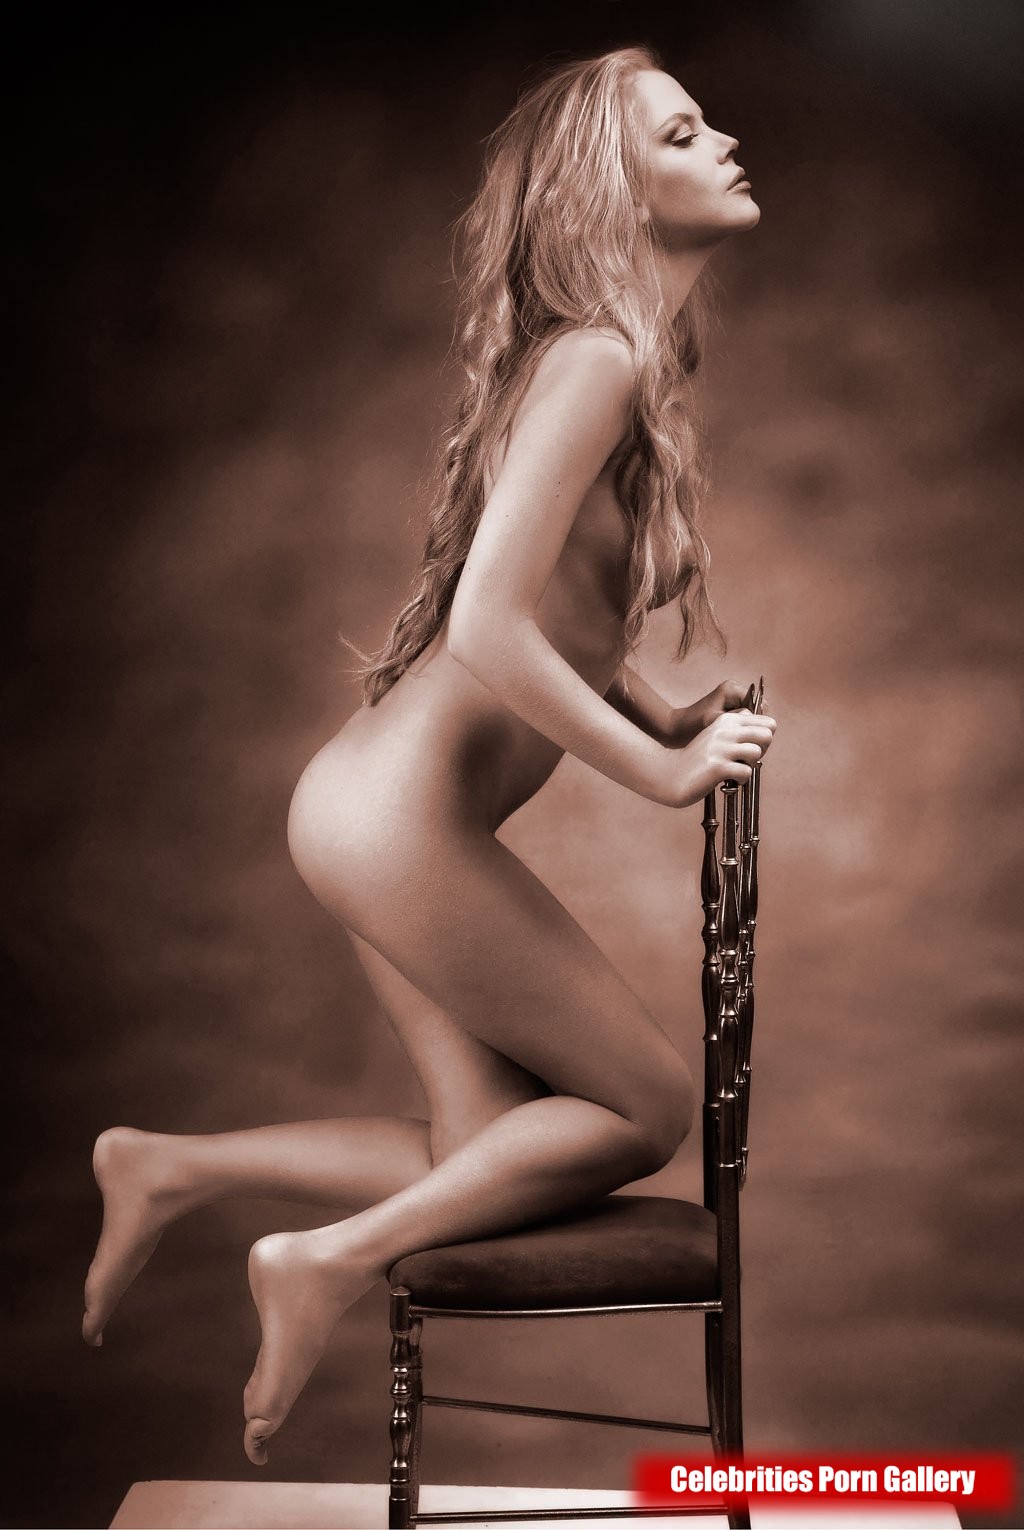 Nicole Kidman Nude Celebrity Pictures free nude celeb pics